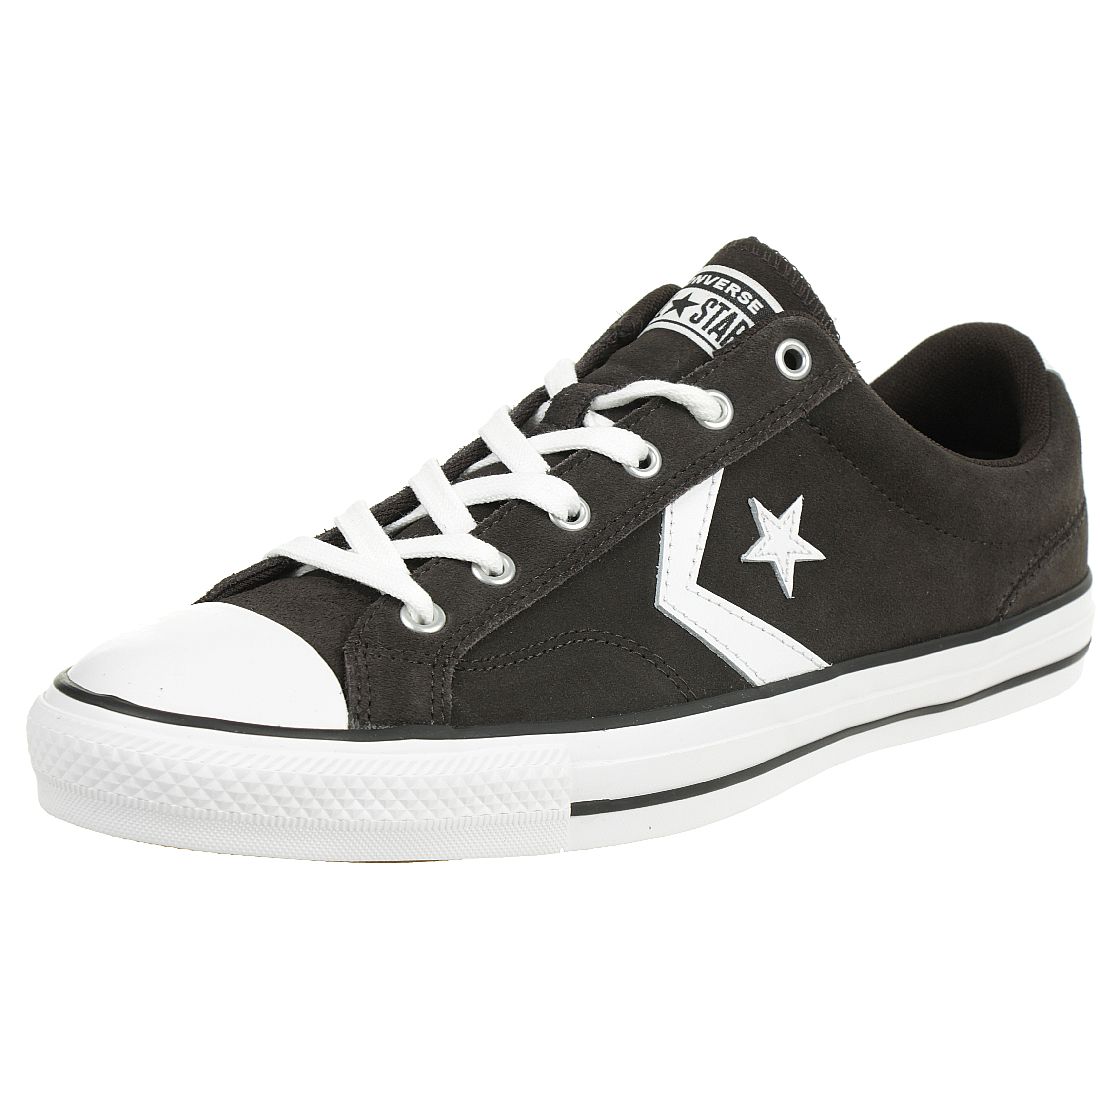 Converse STAR PLAYER OX Schuhe Sneaker Wildleder braun 165464C 36.5 EU